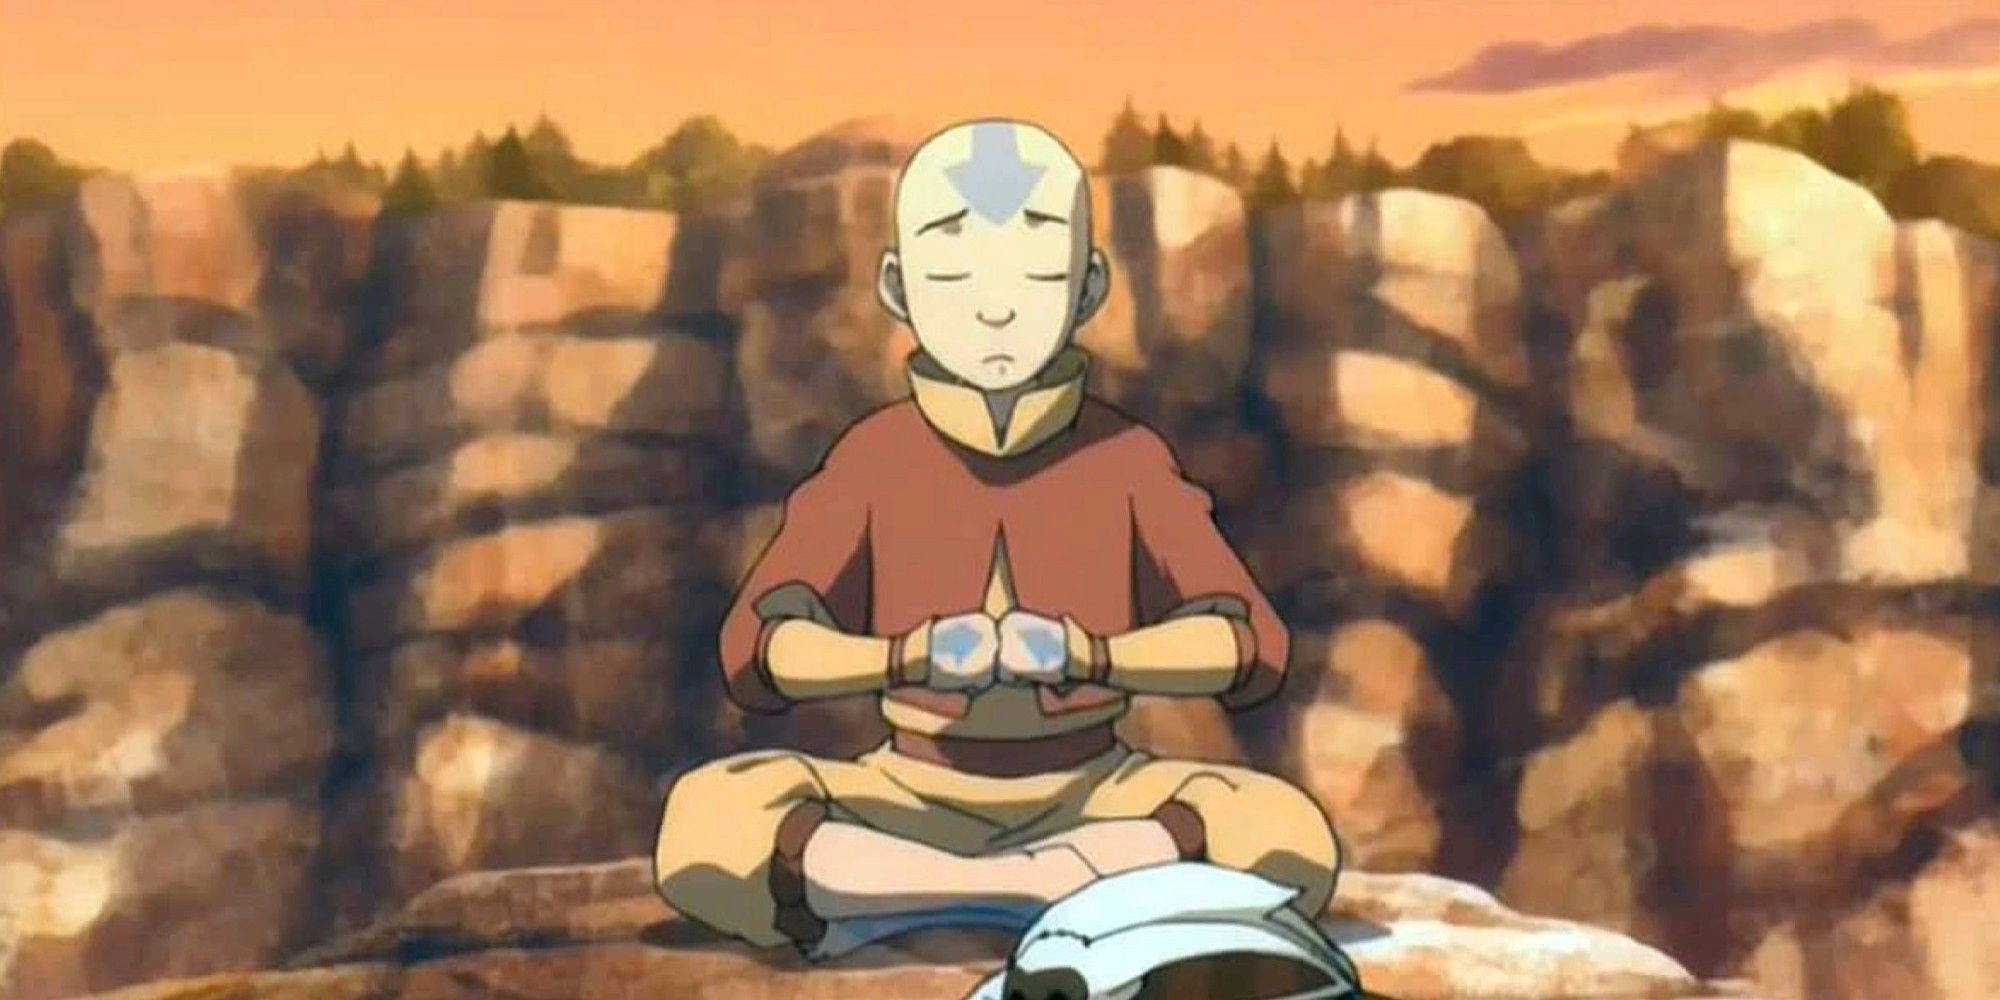 Avatar Last Airbender Live-Action Star recrea la pose de Aang en una nueva imagen